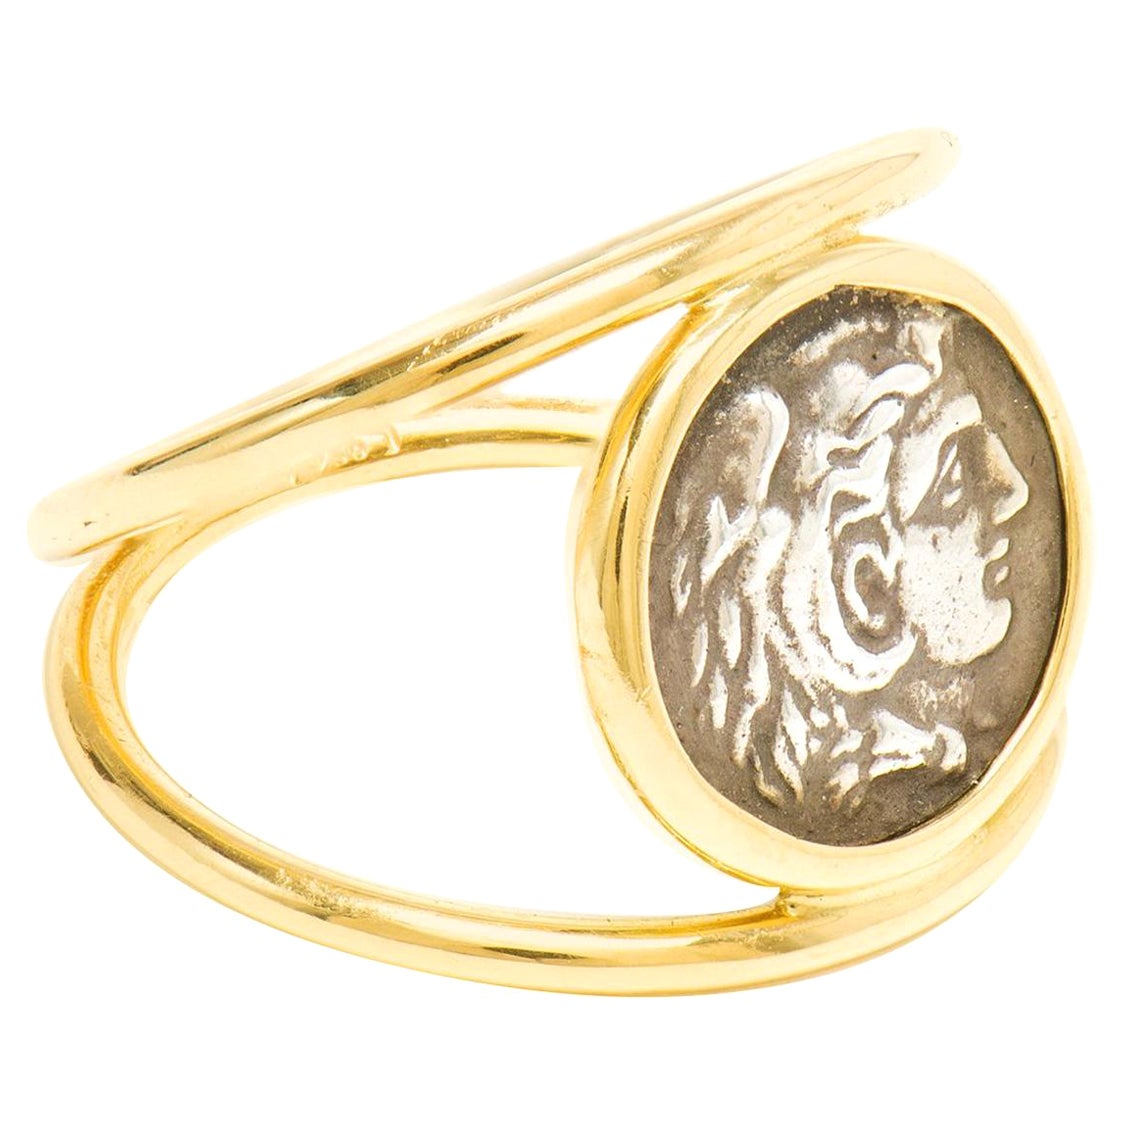 Dubini Alexander der Große Silbermünze 18K Gelbgold Siegelring